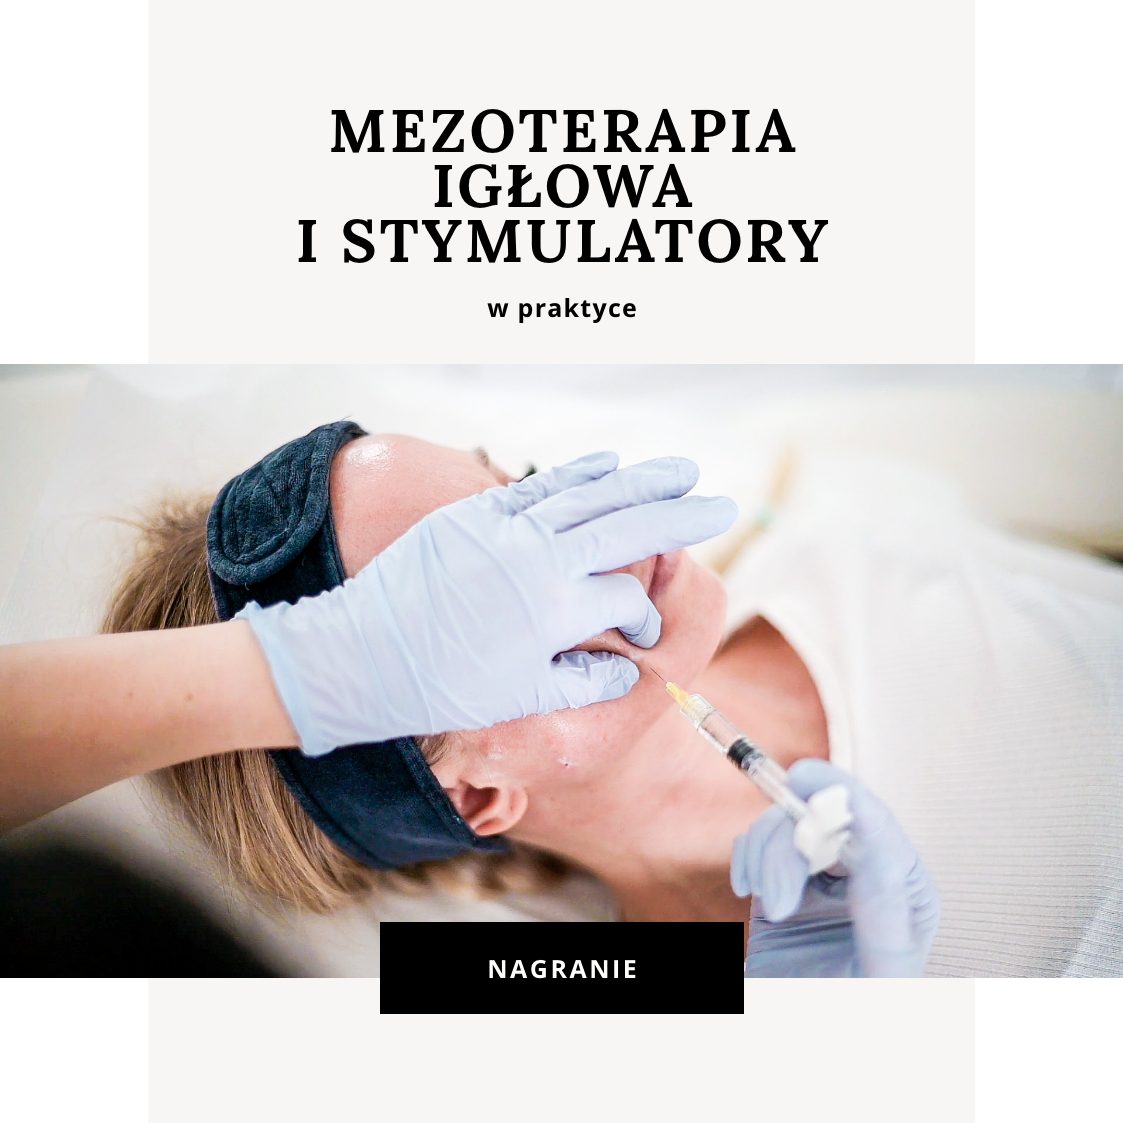 Nagranie: Mezoterapia igłowa i stymulatory w praktyce